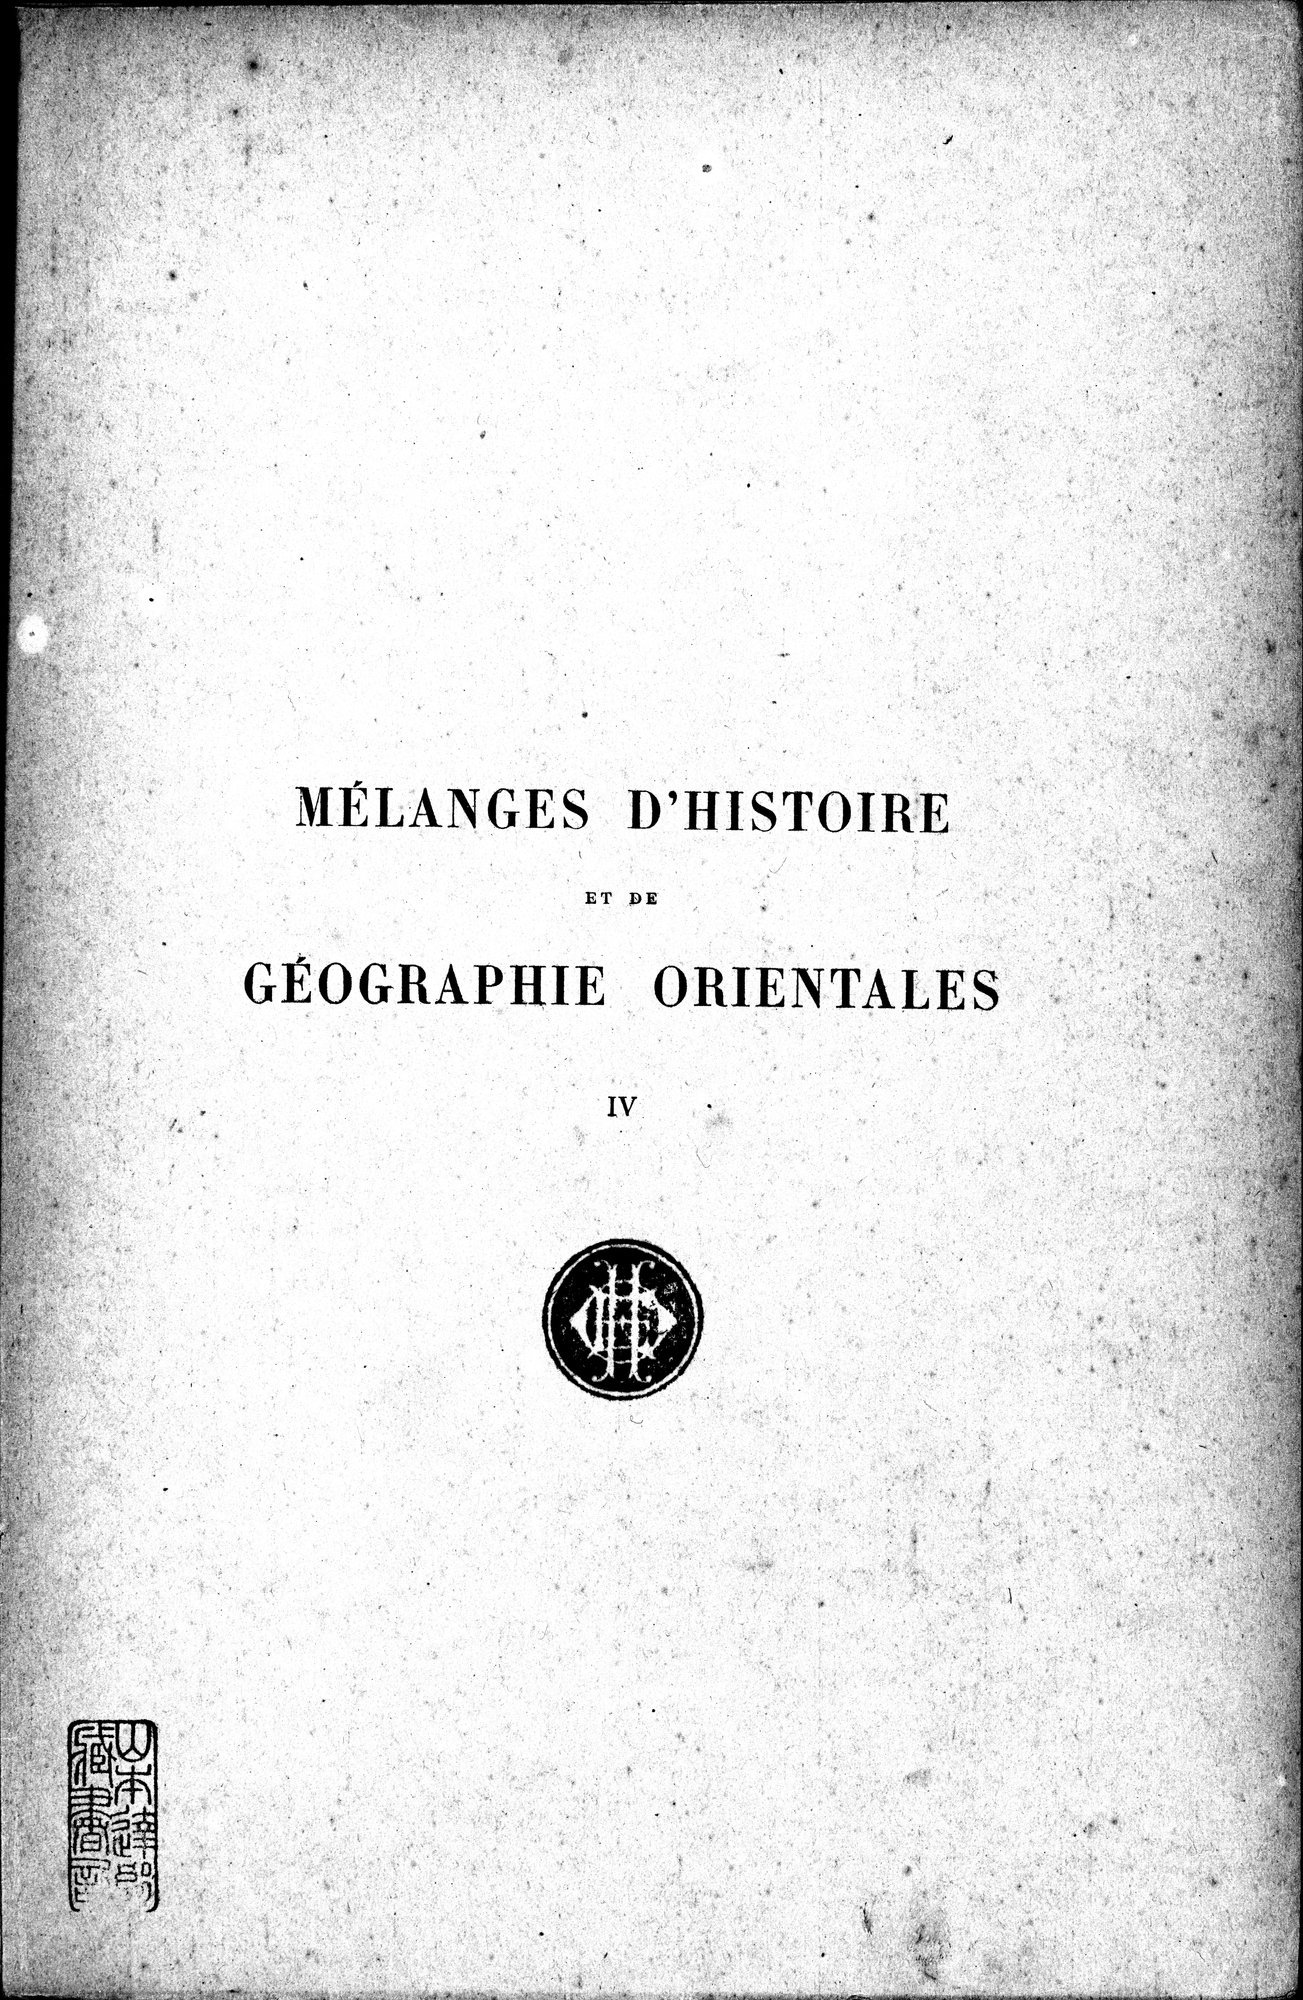 Mélanges d'Histoire et de Géographie Orientales : vol.4 / Page 3 (Grayscale High Resolution Image)